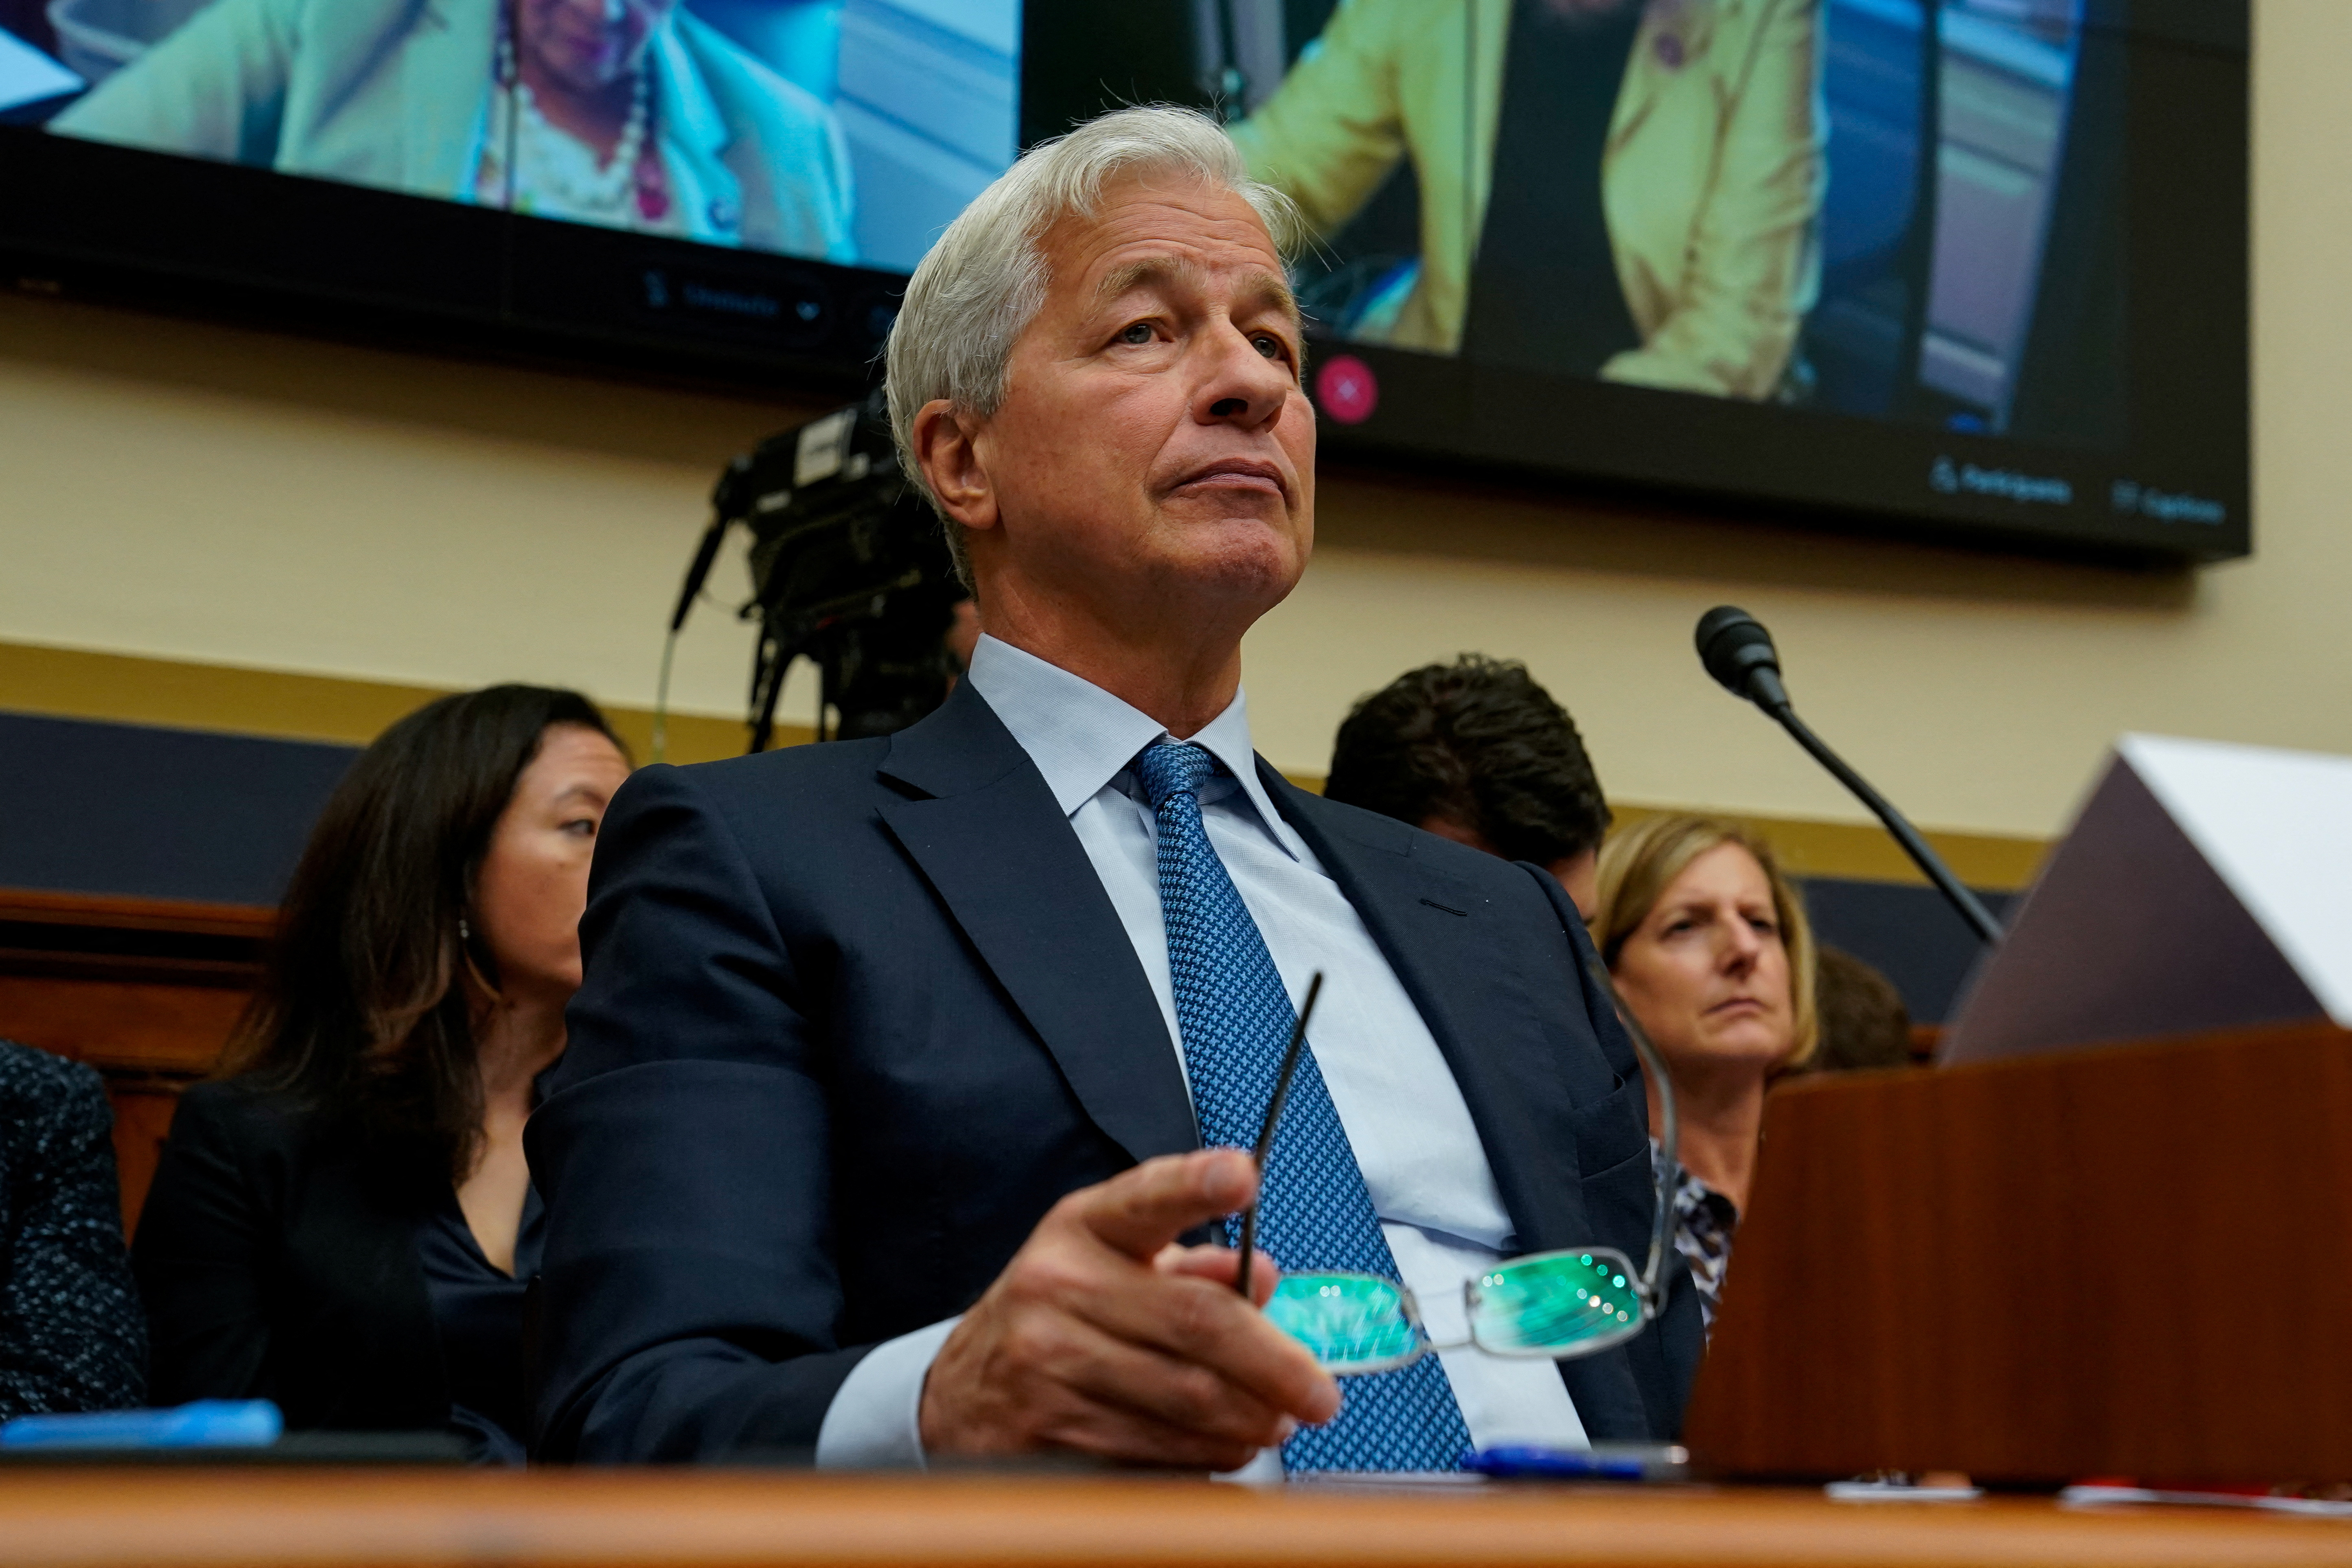 El presidente del JPMorgan Chase Jamie Dimon en una audiencia en un comité del congreso norteamericano
REUTERS/Elizabeth Frantz